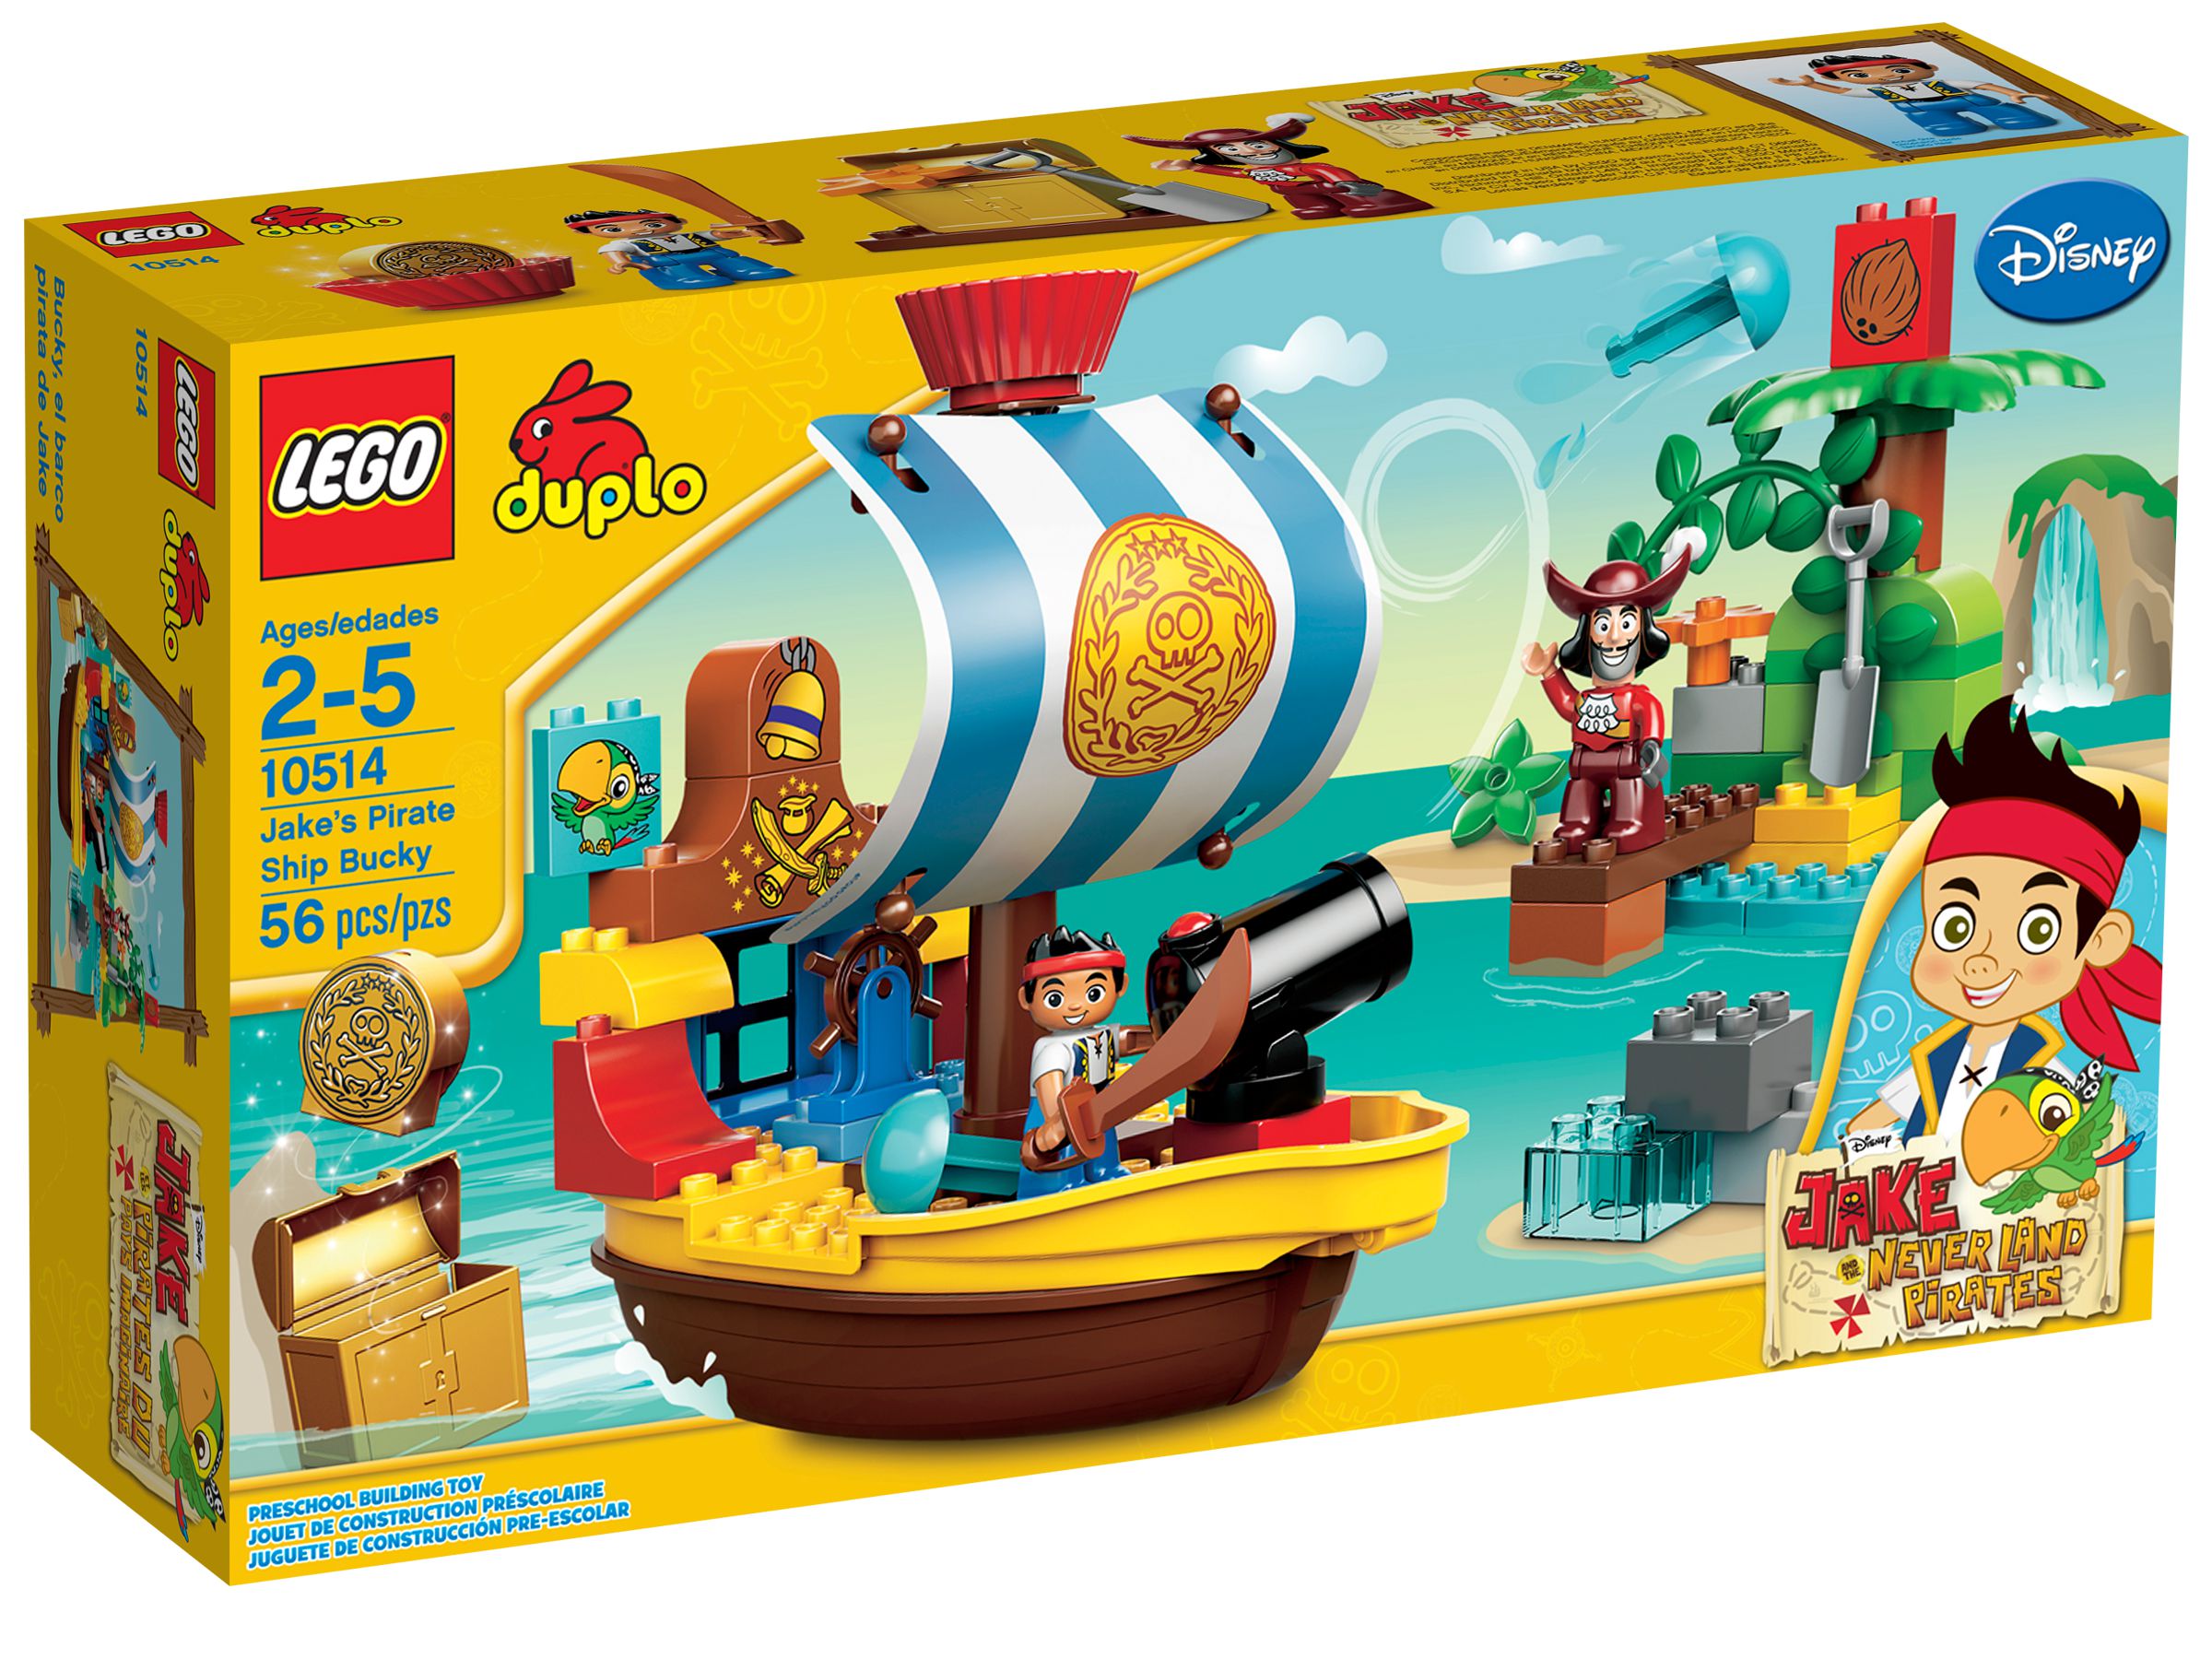 LEGO Duplo 10514 Piratenschiff Bucky LEGO_10514_alt1.jpg